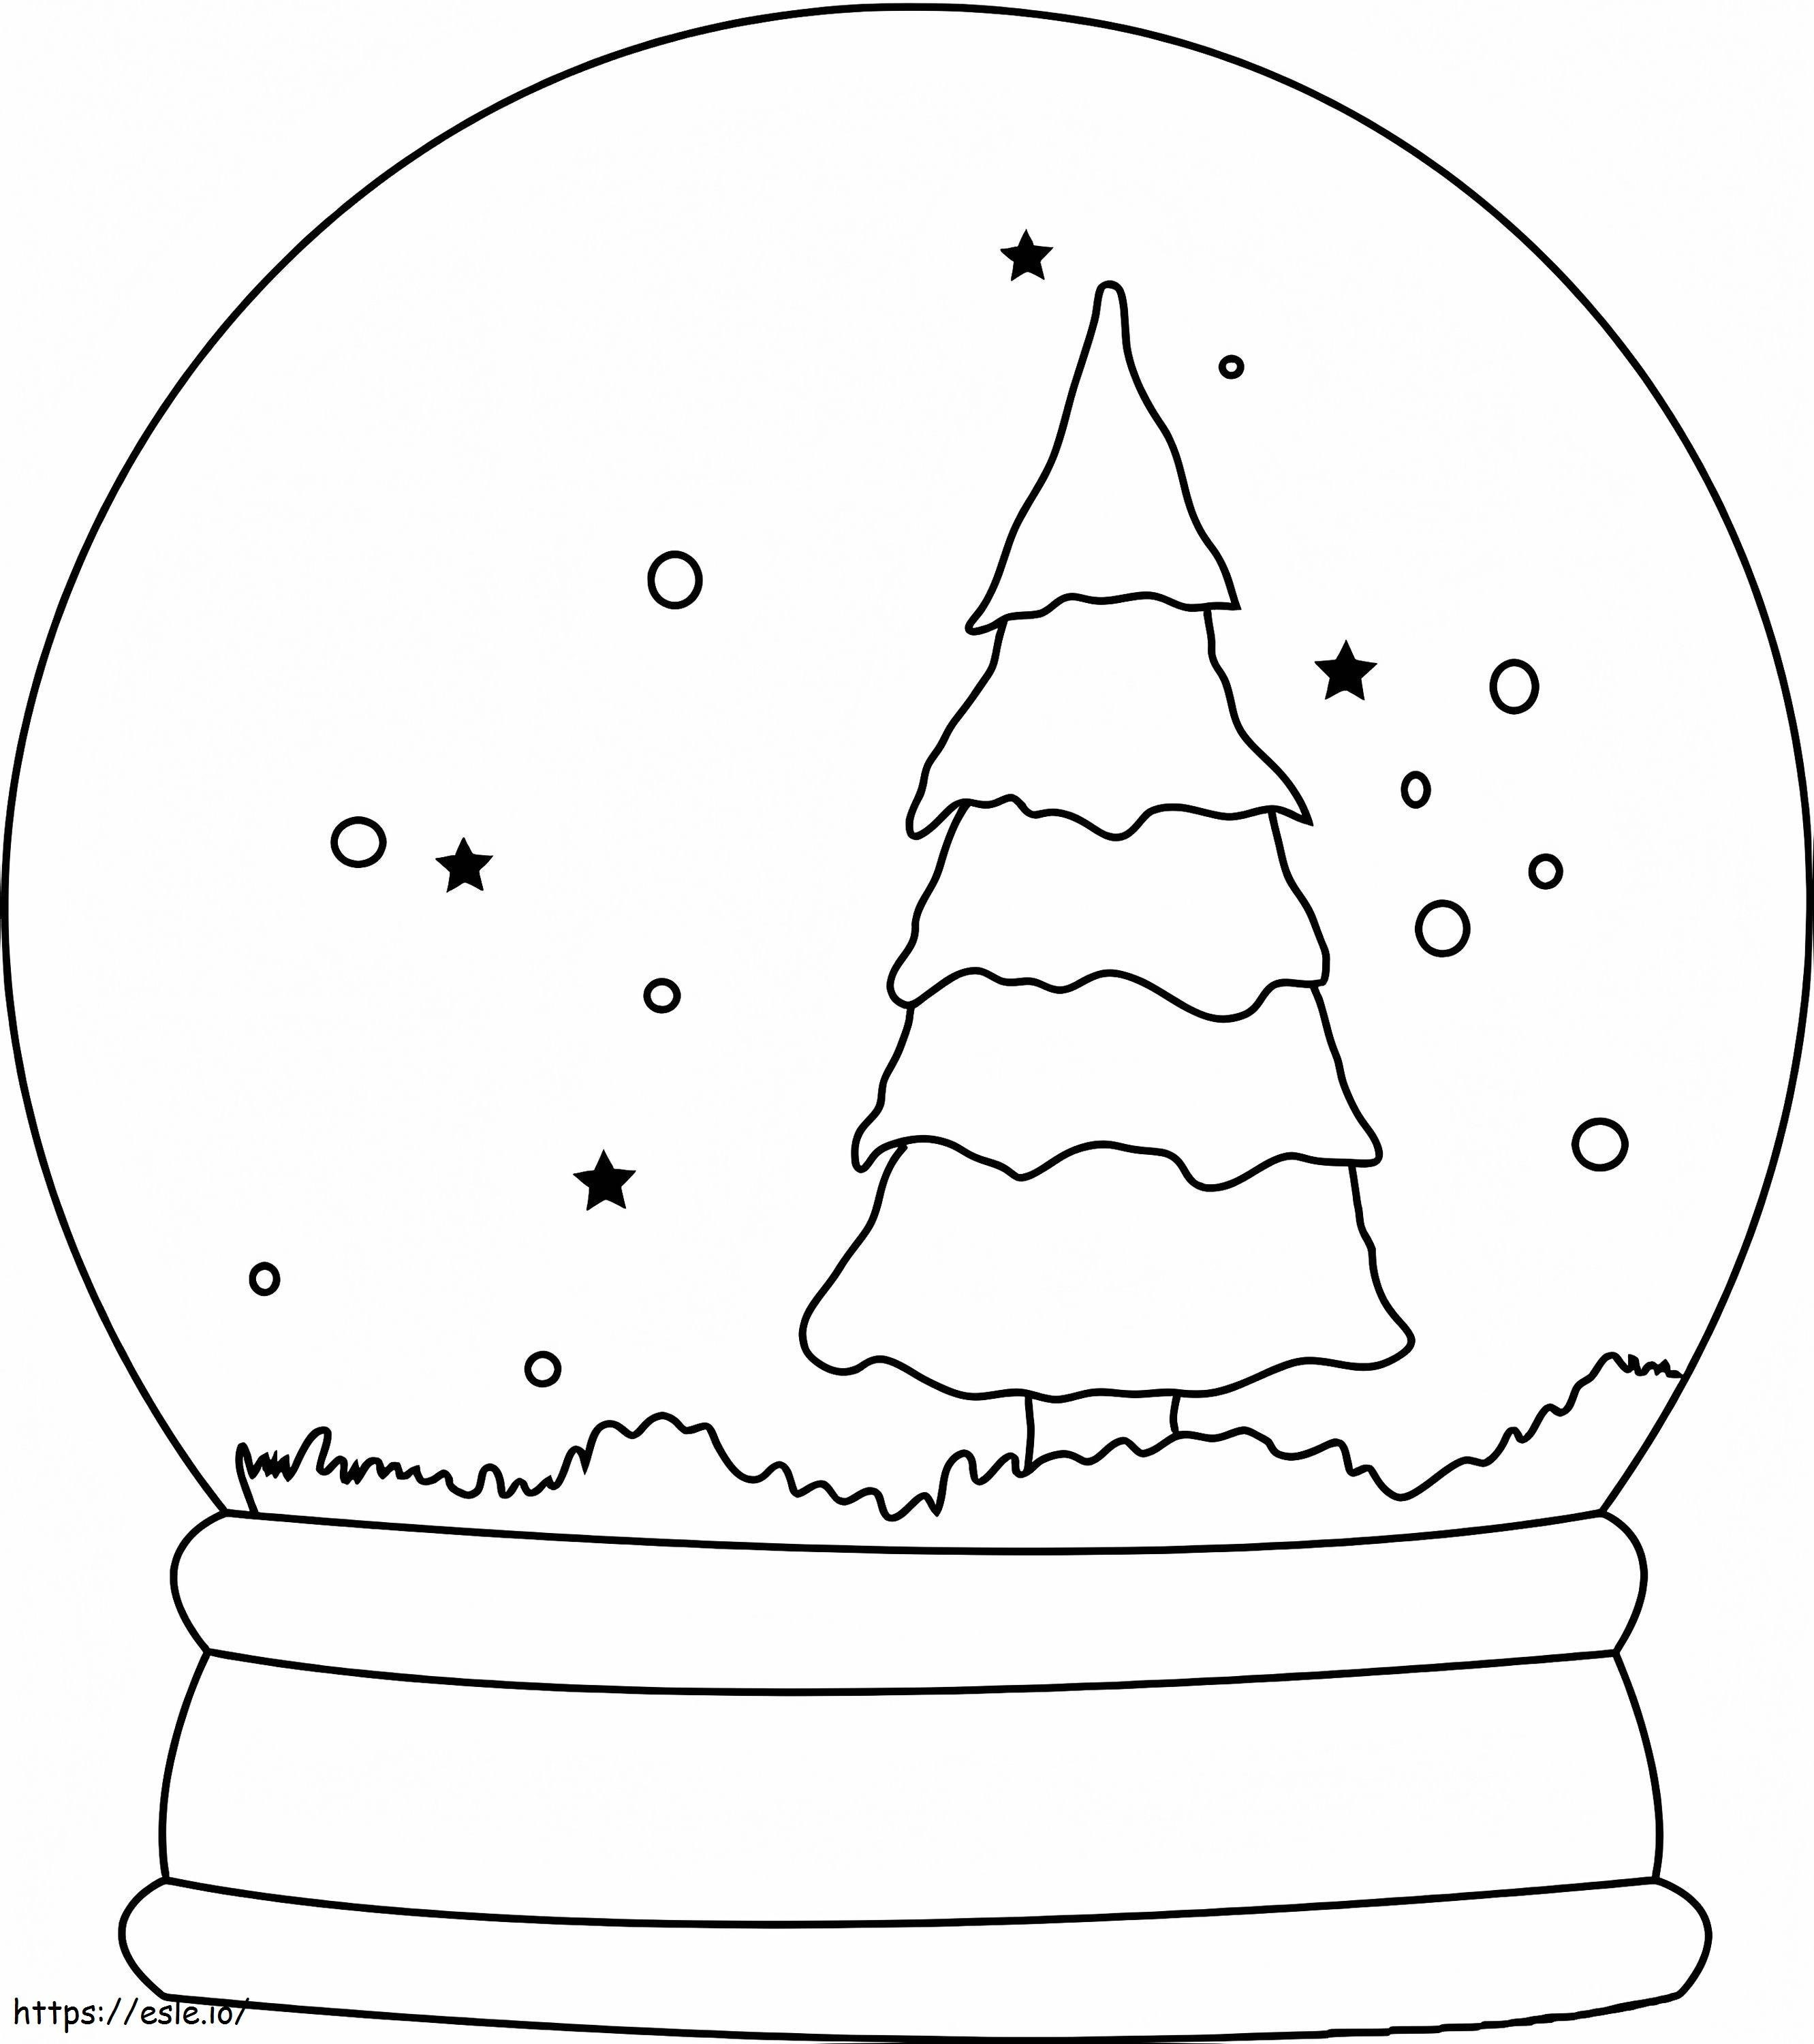 Globo de neve fácil com árvore de Natal para colorir